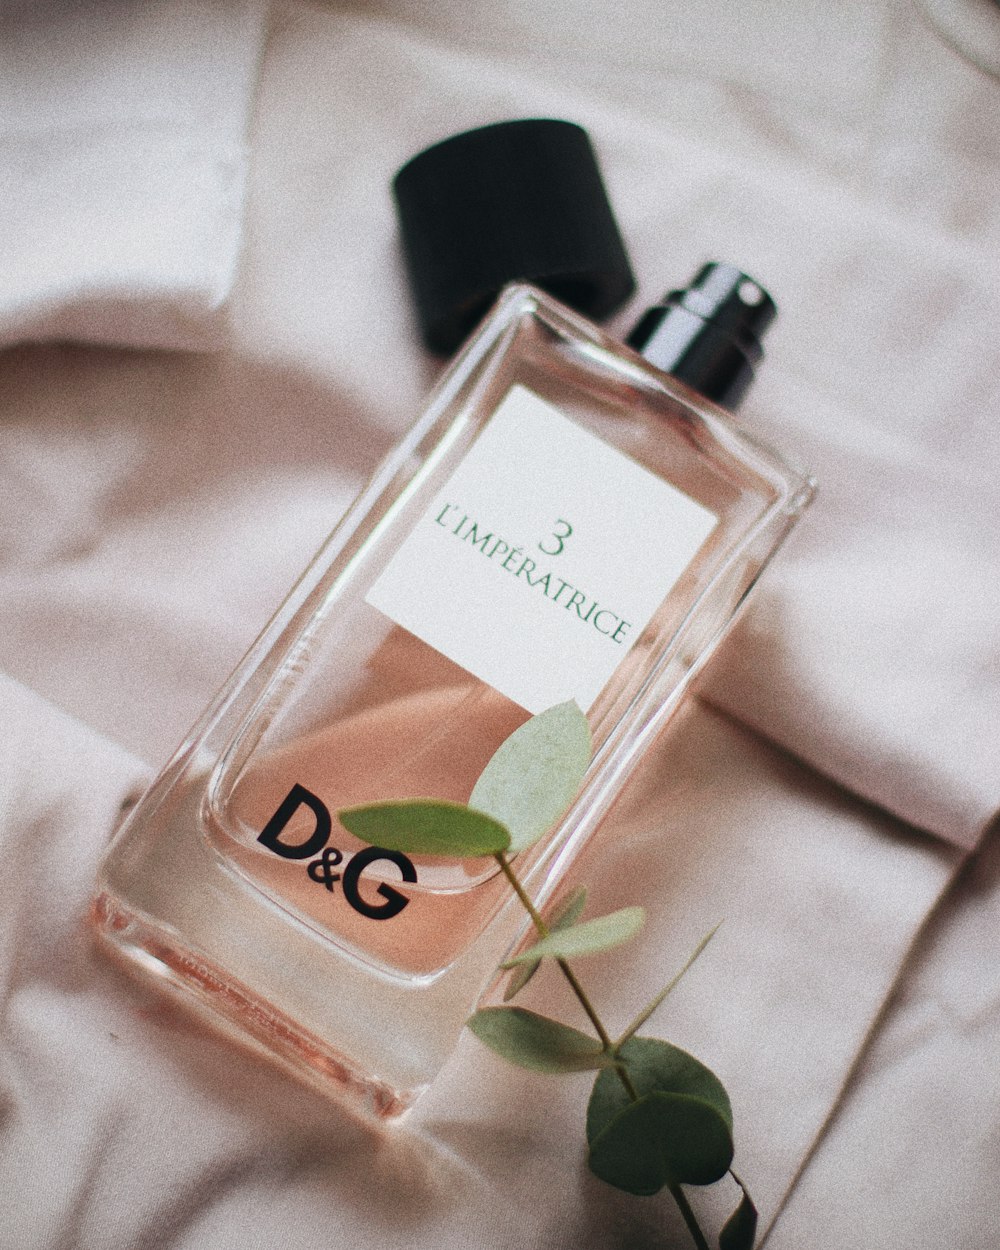 um frasco de perfume d & g ao lado de uma planta